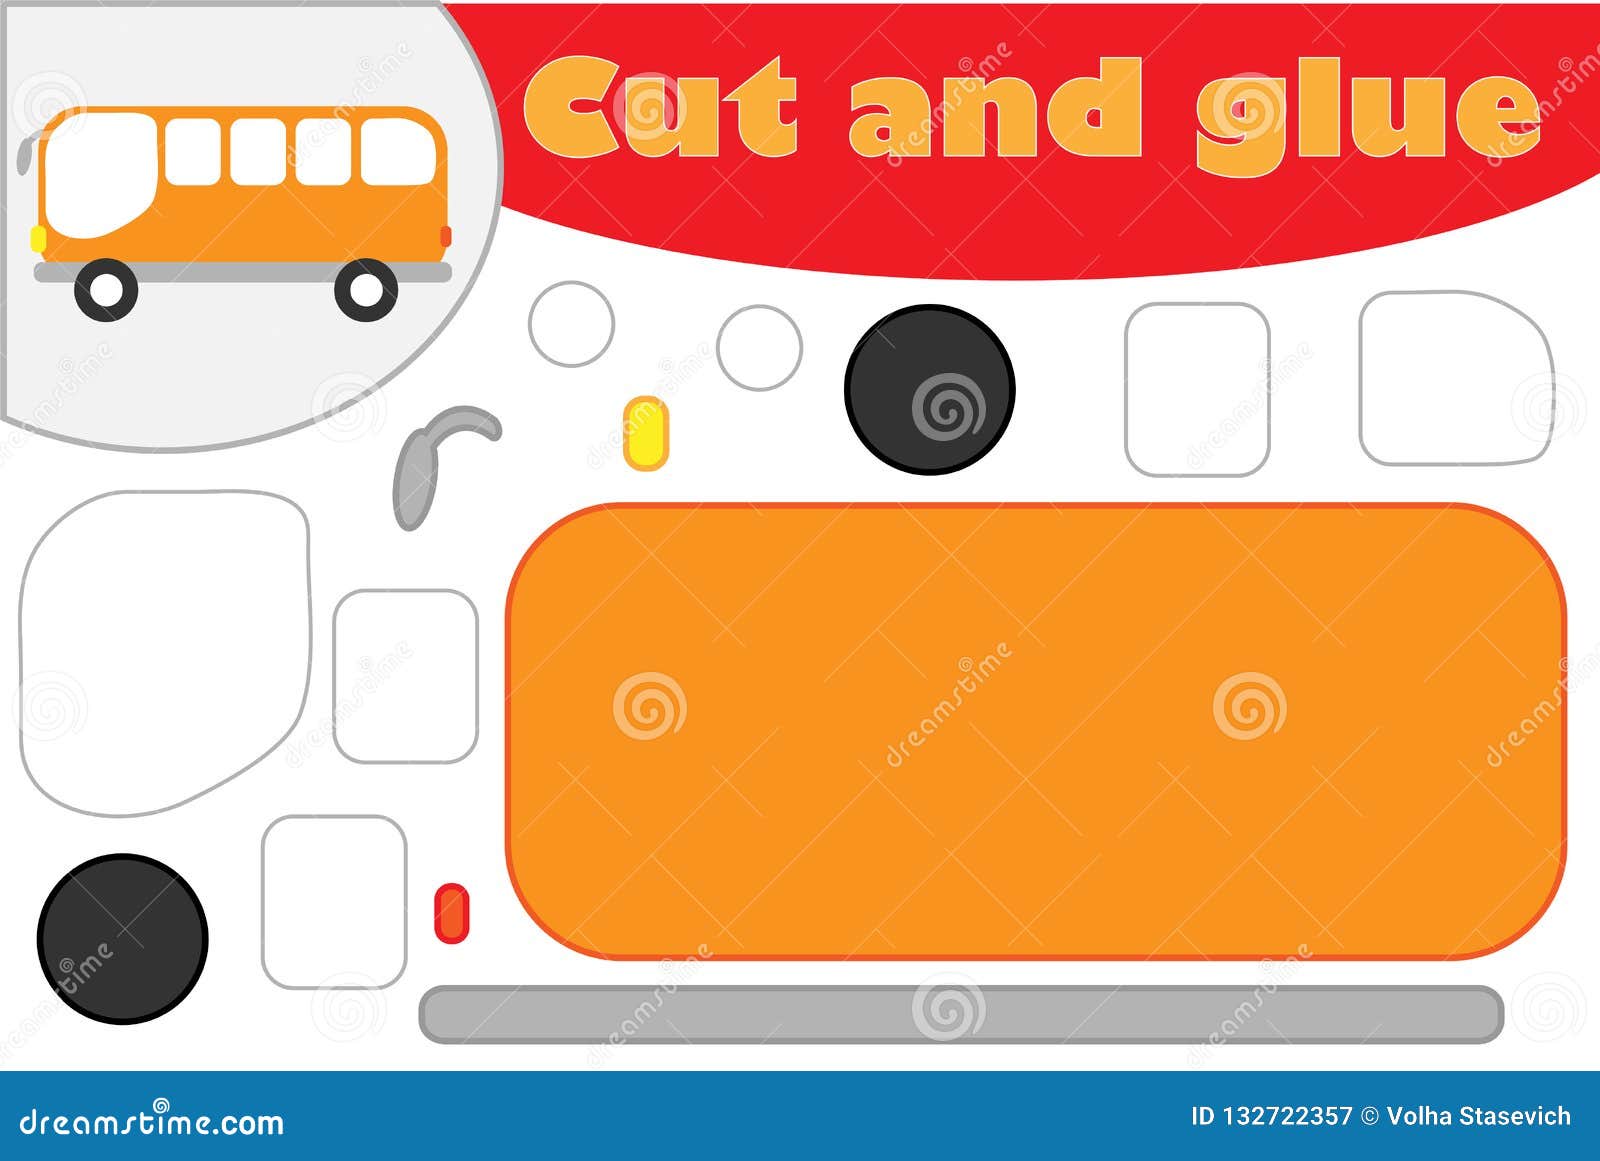 Jogo de papel educativo de ônibus escolar para crianças cortar e